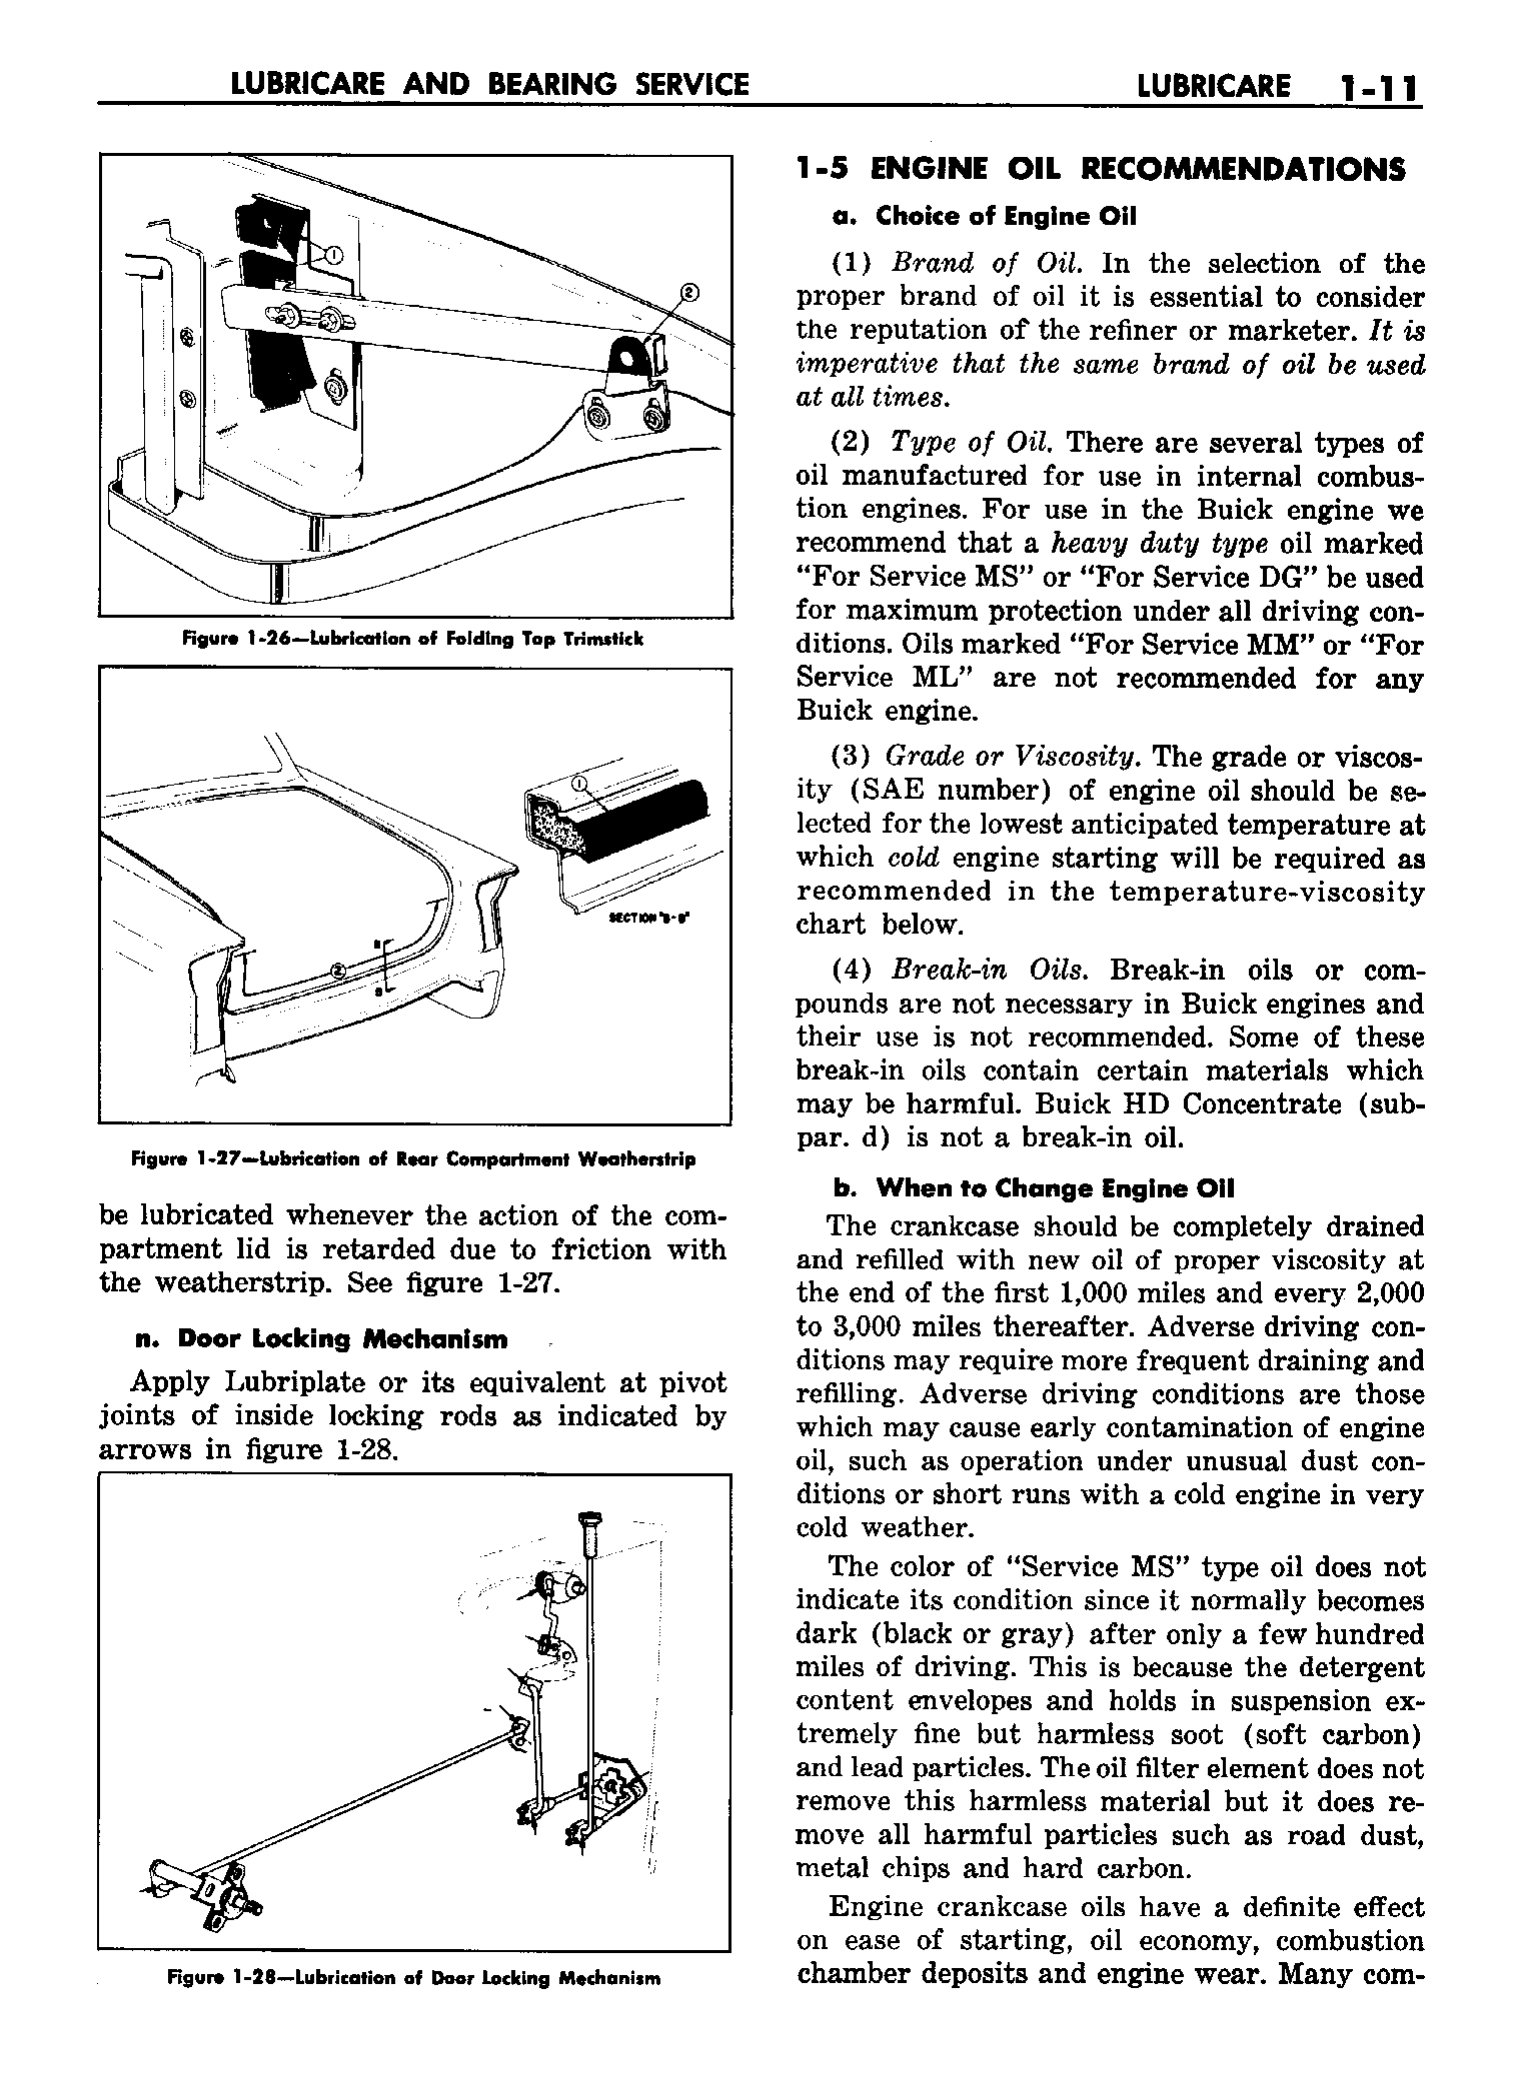 n_02 1958 Buick Shop Manual - Lubricare_11.jpg